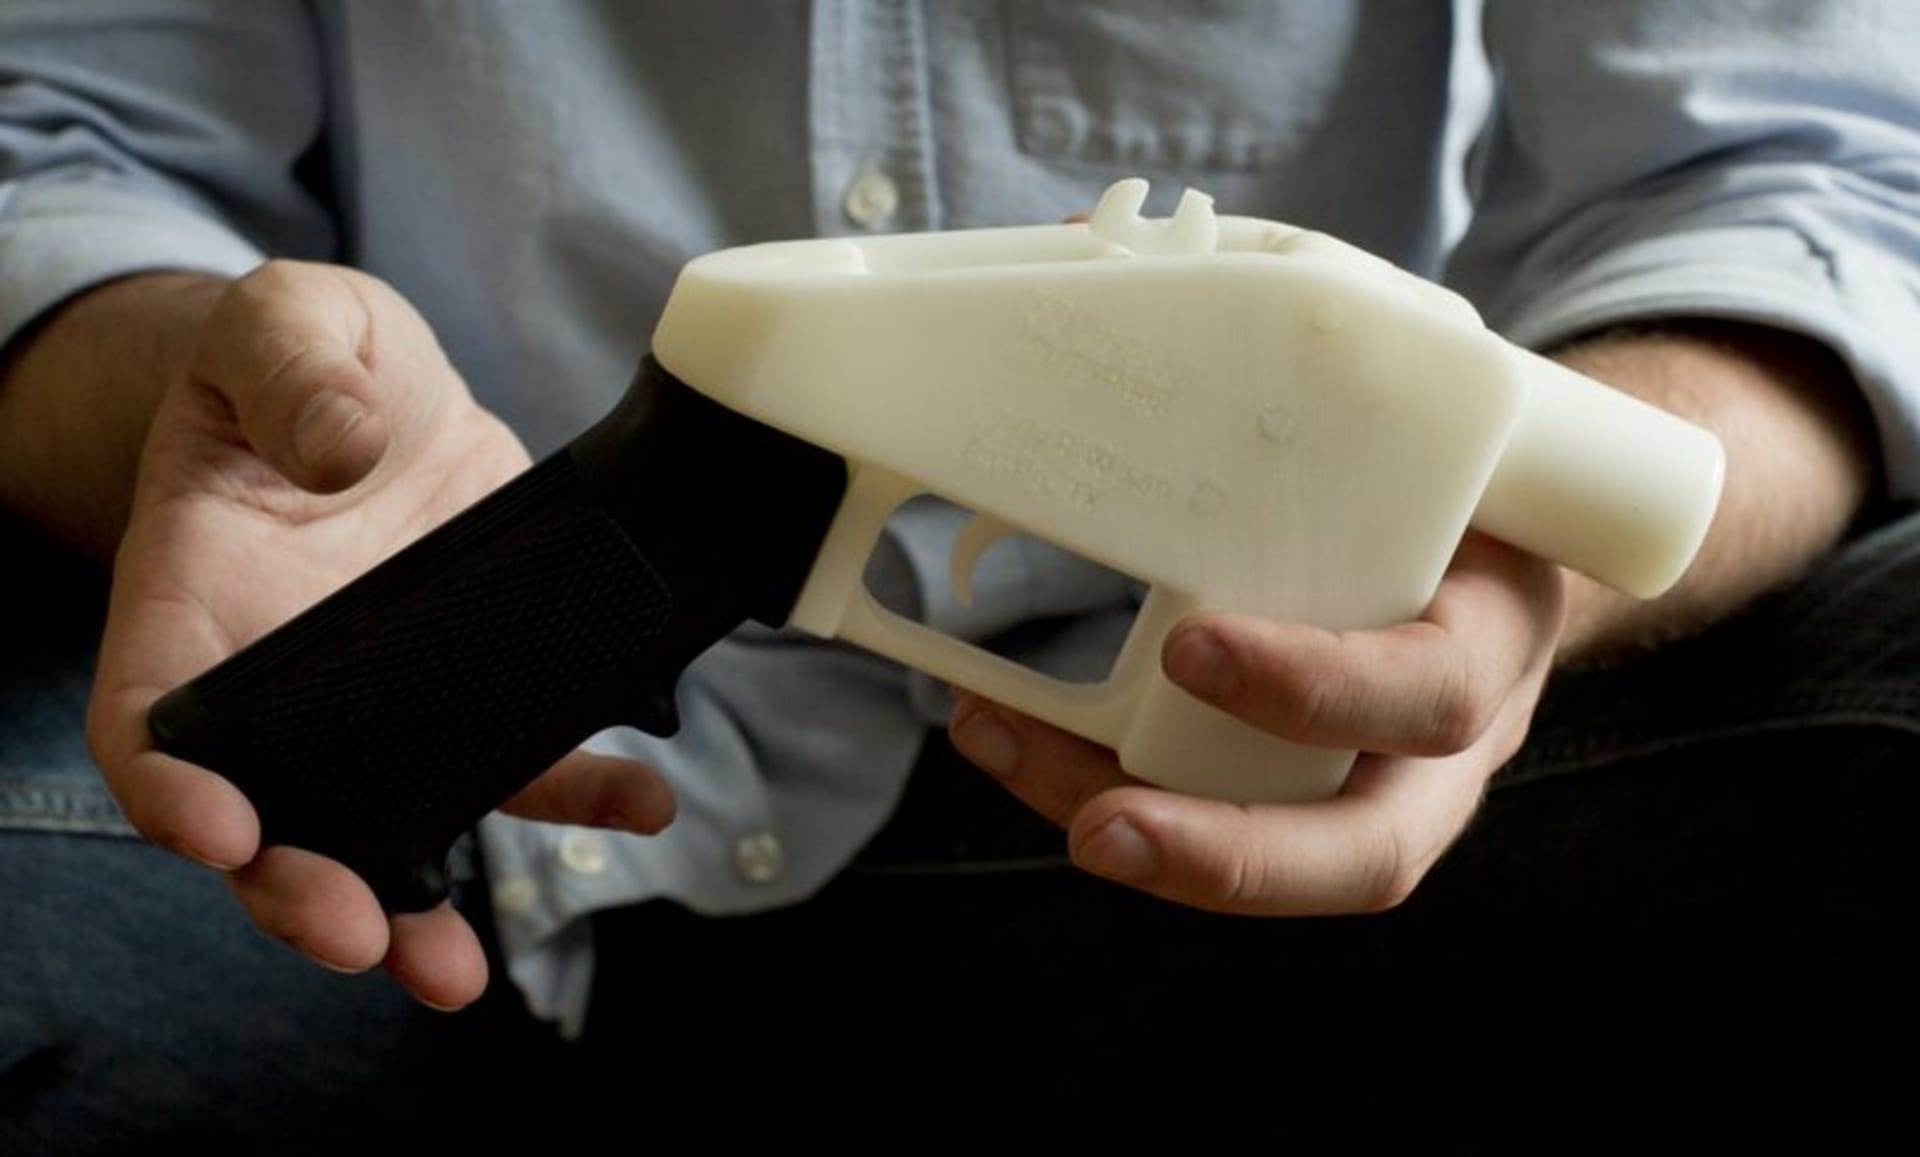 Americký soud dočasně zastavil volnou distribuci návodů na 3D tisk zbraní